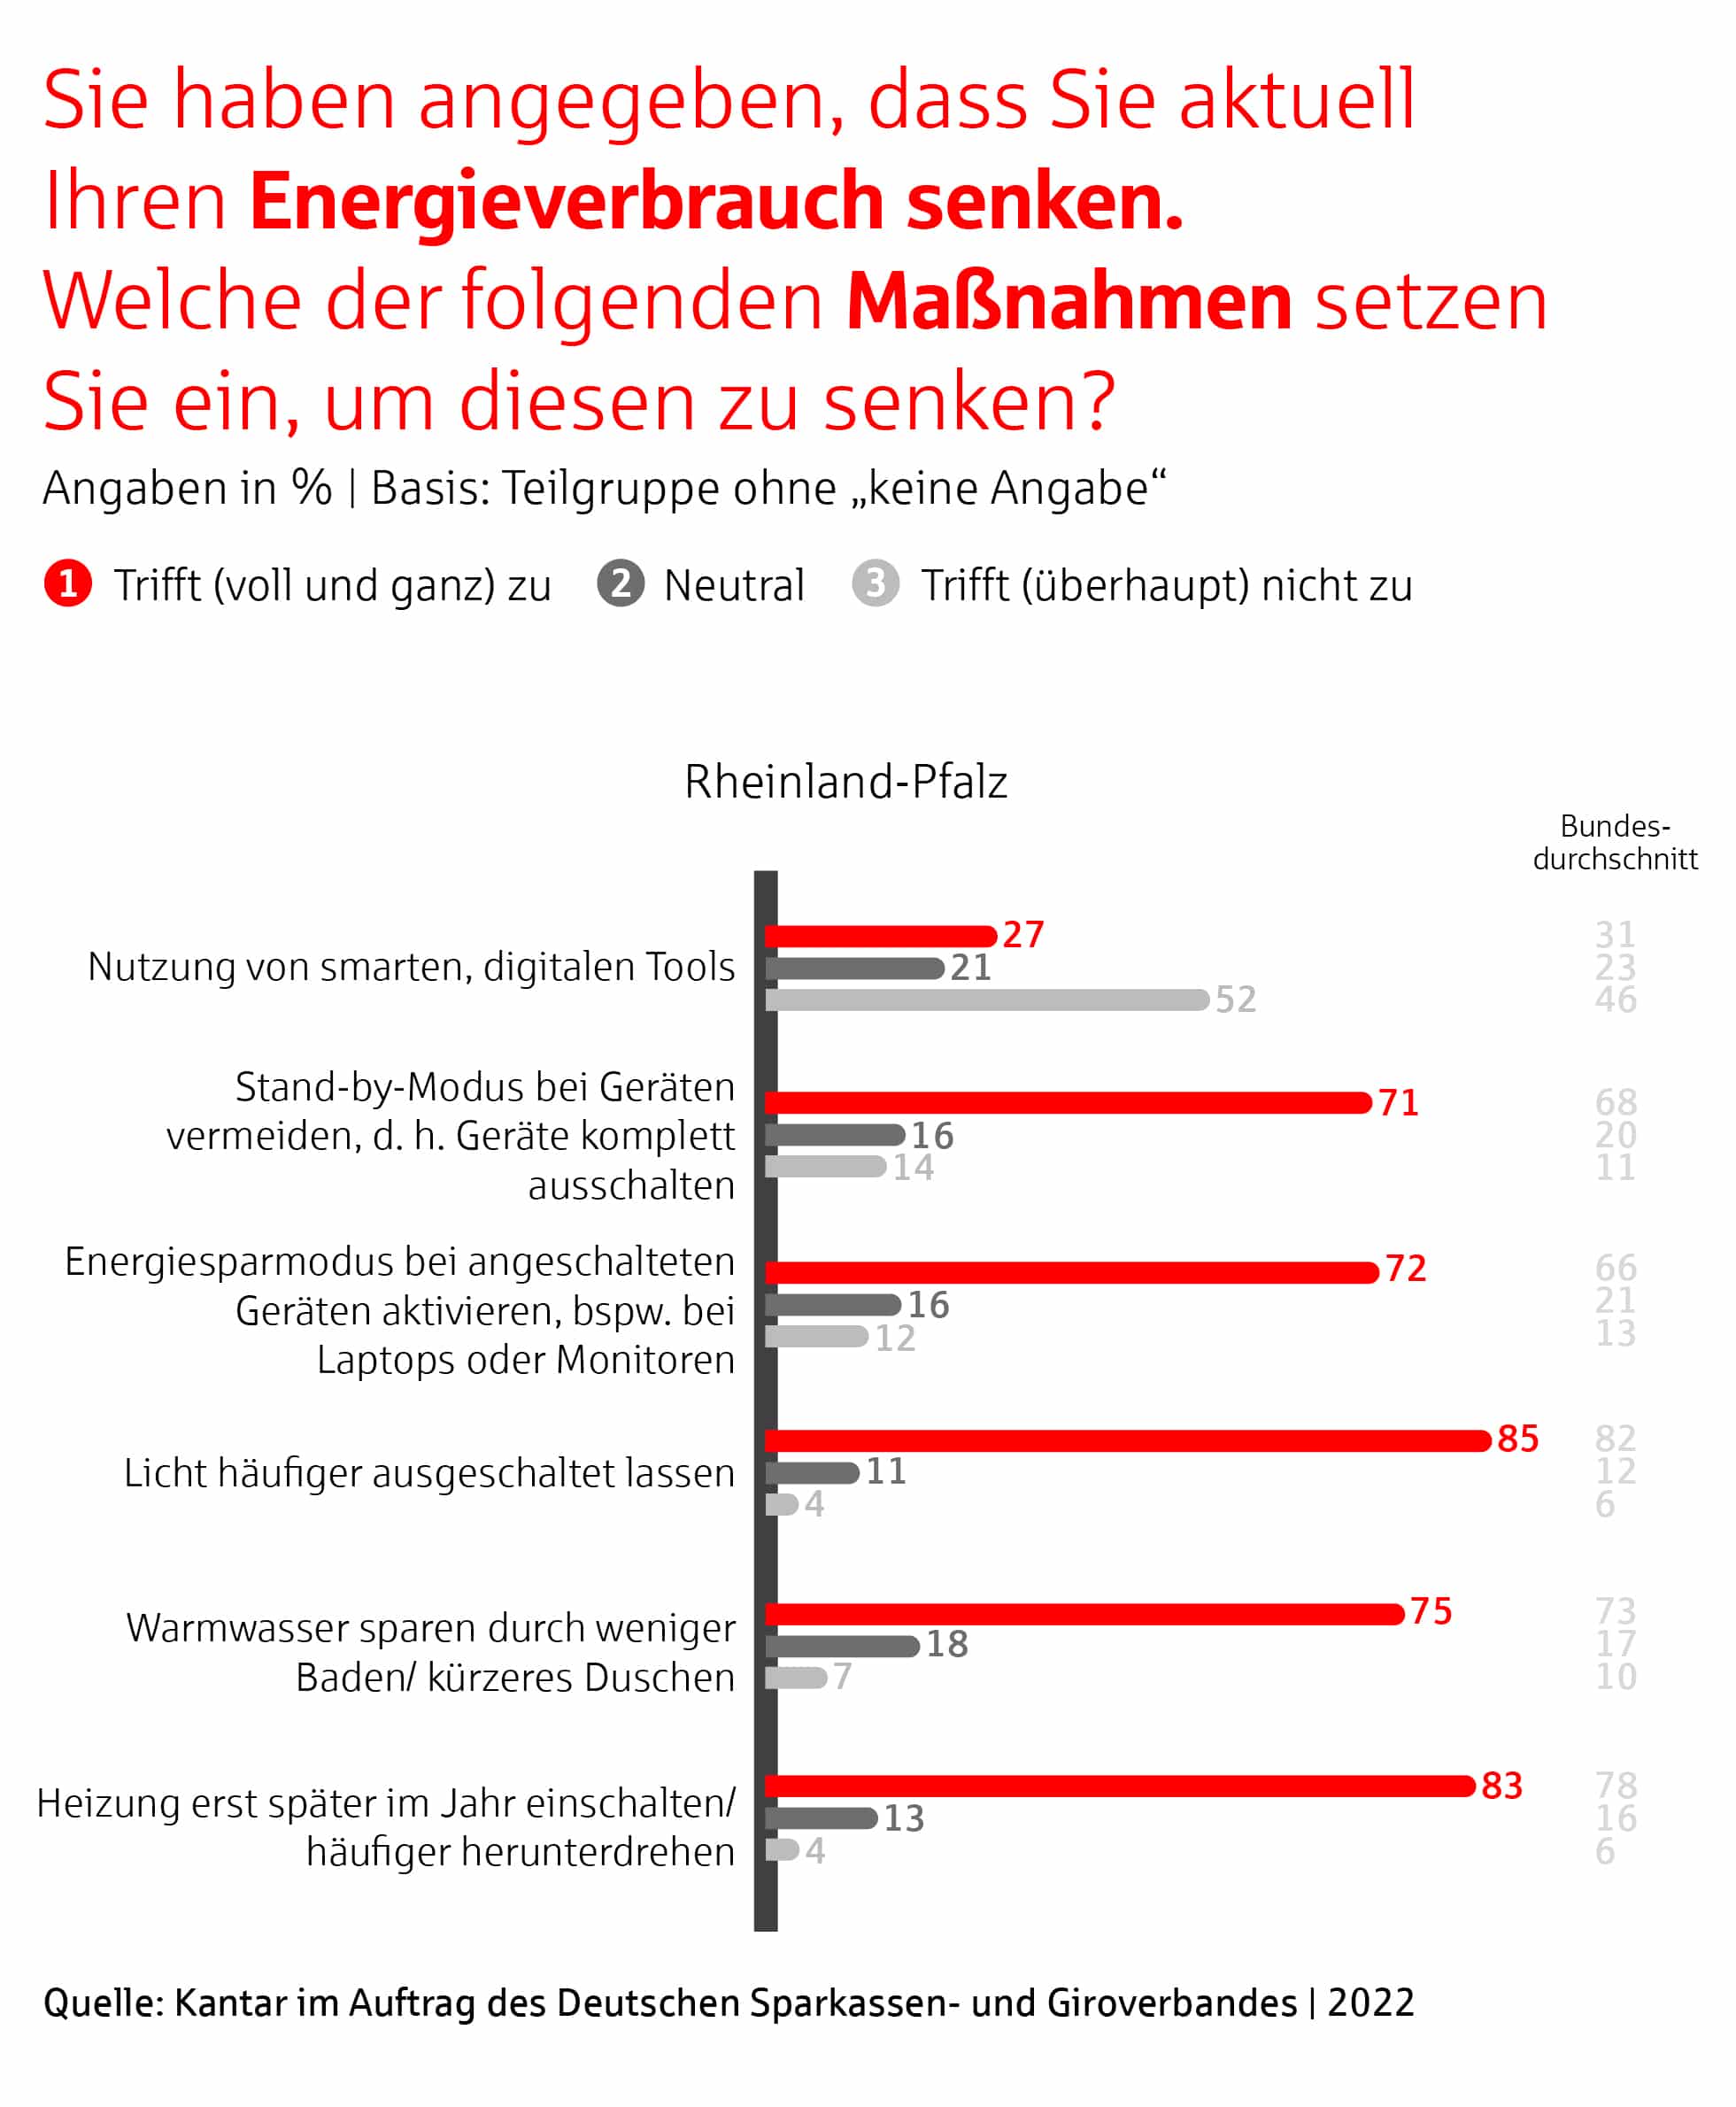 Ergebnisse der Umfrage in Rheinland-Pfalz: Energieverbrauch senken.